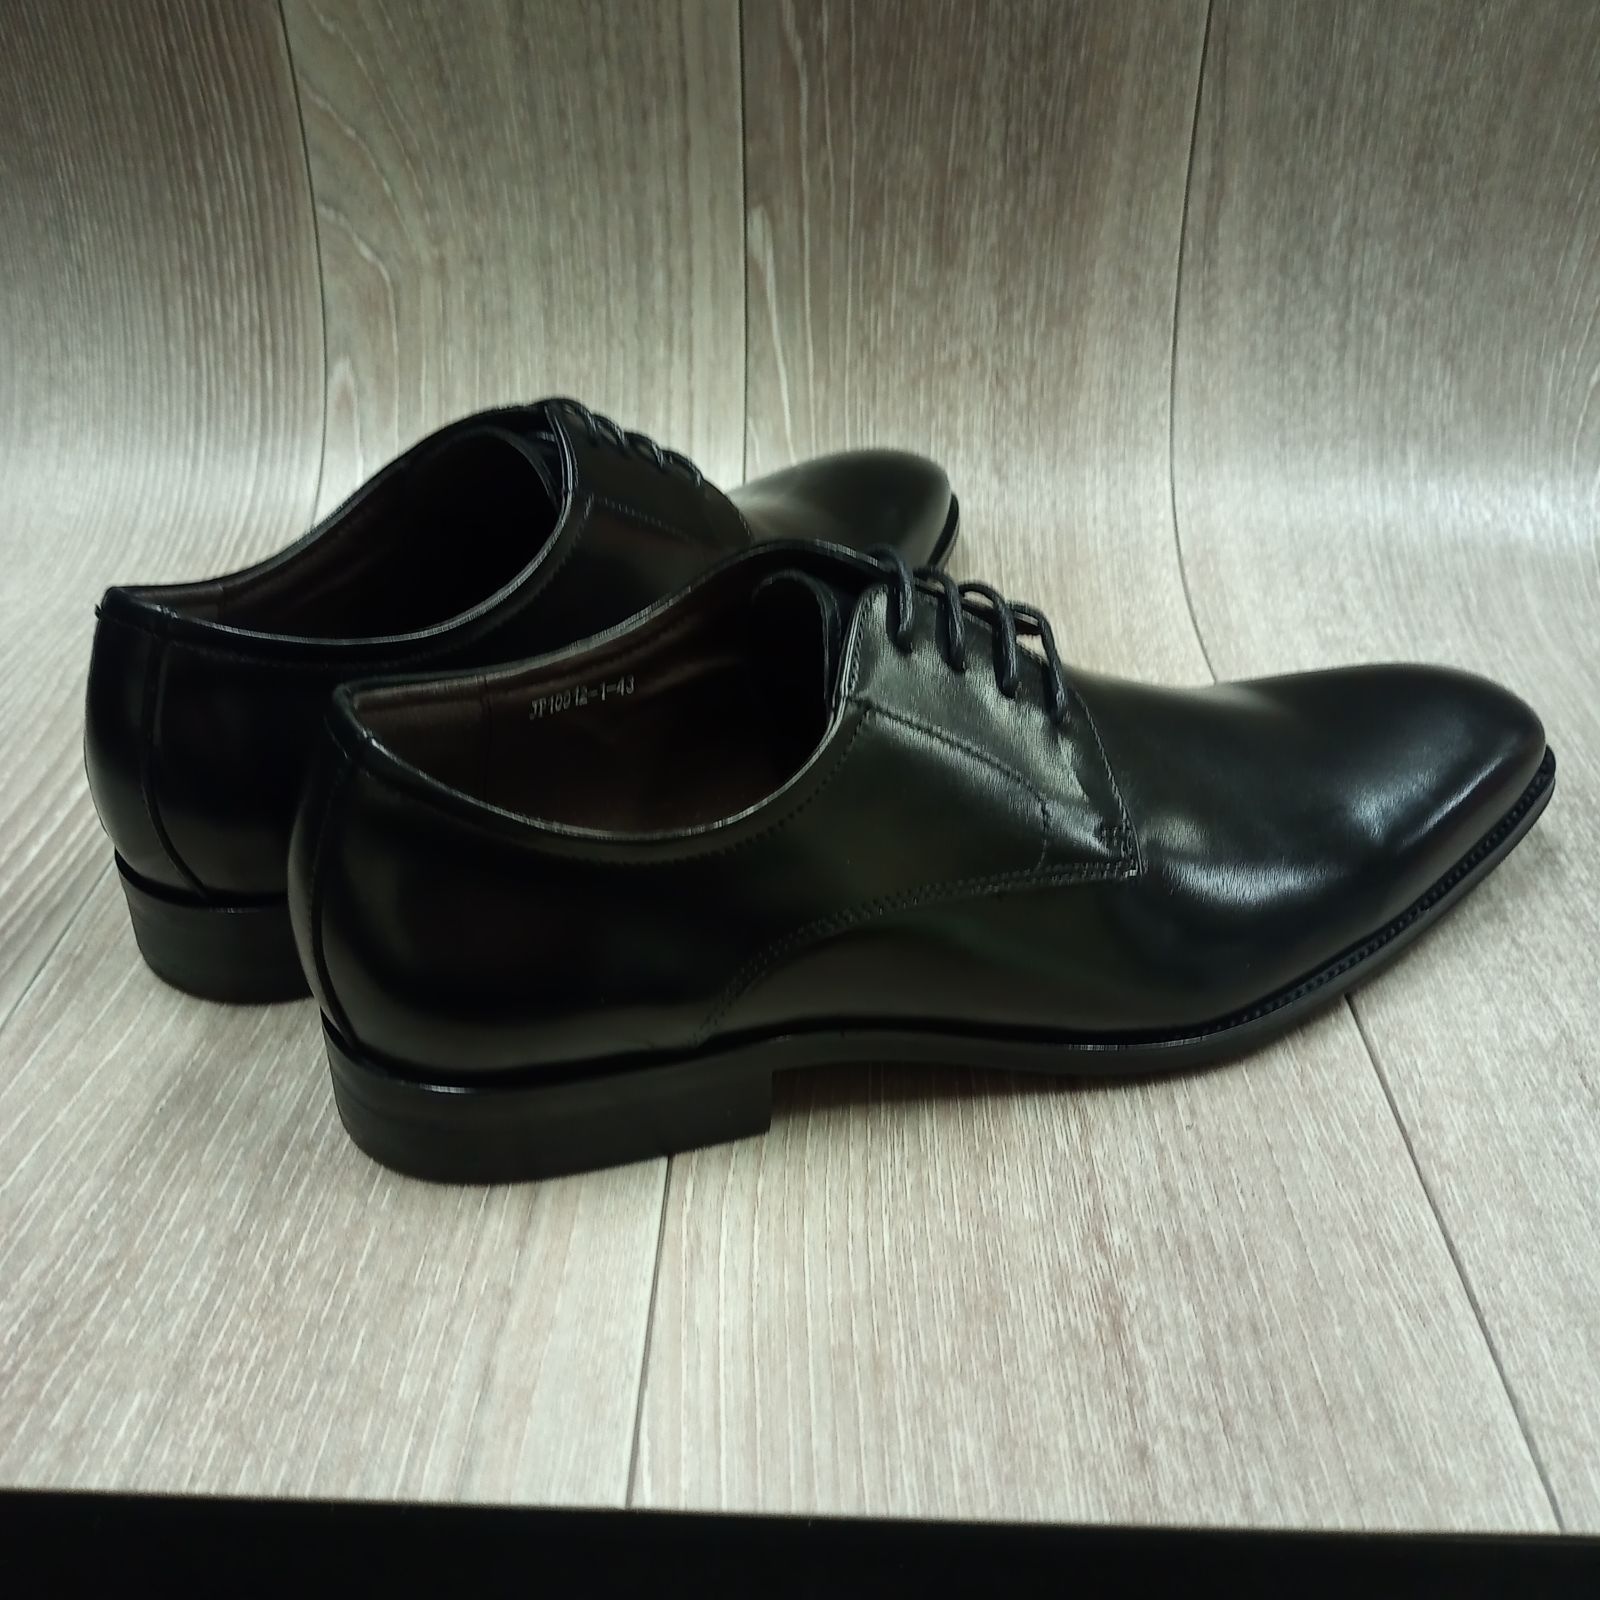 ジャンカーニ GIANCANI イタリア製 革靴 サイズ 本革